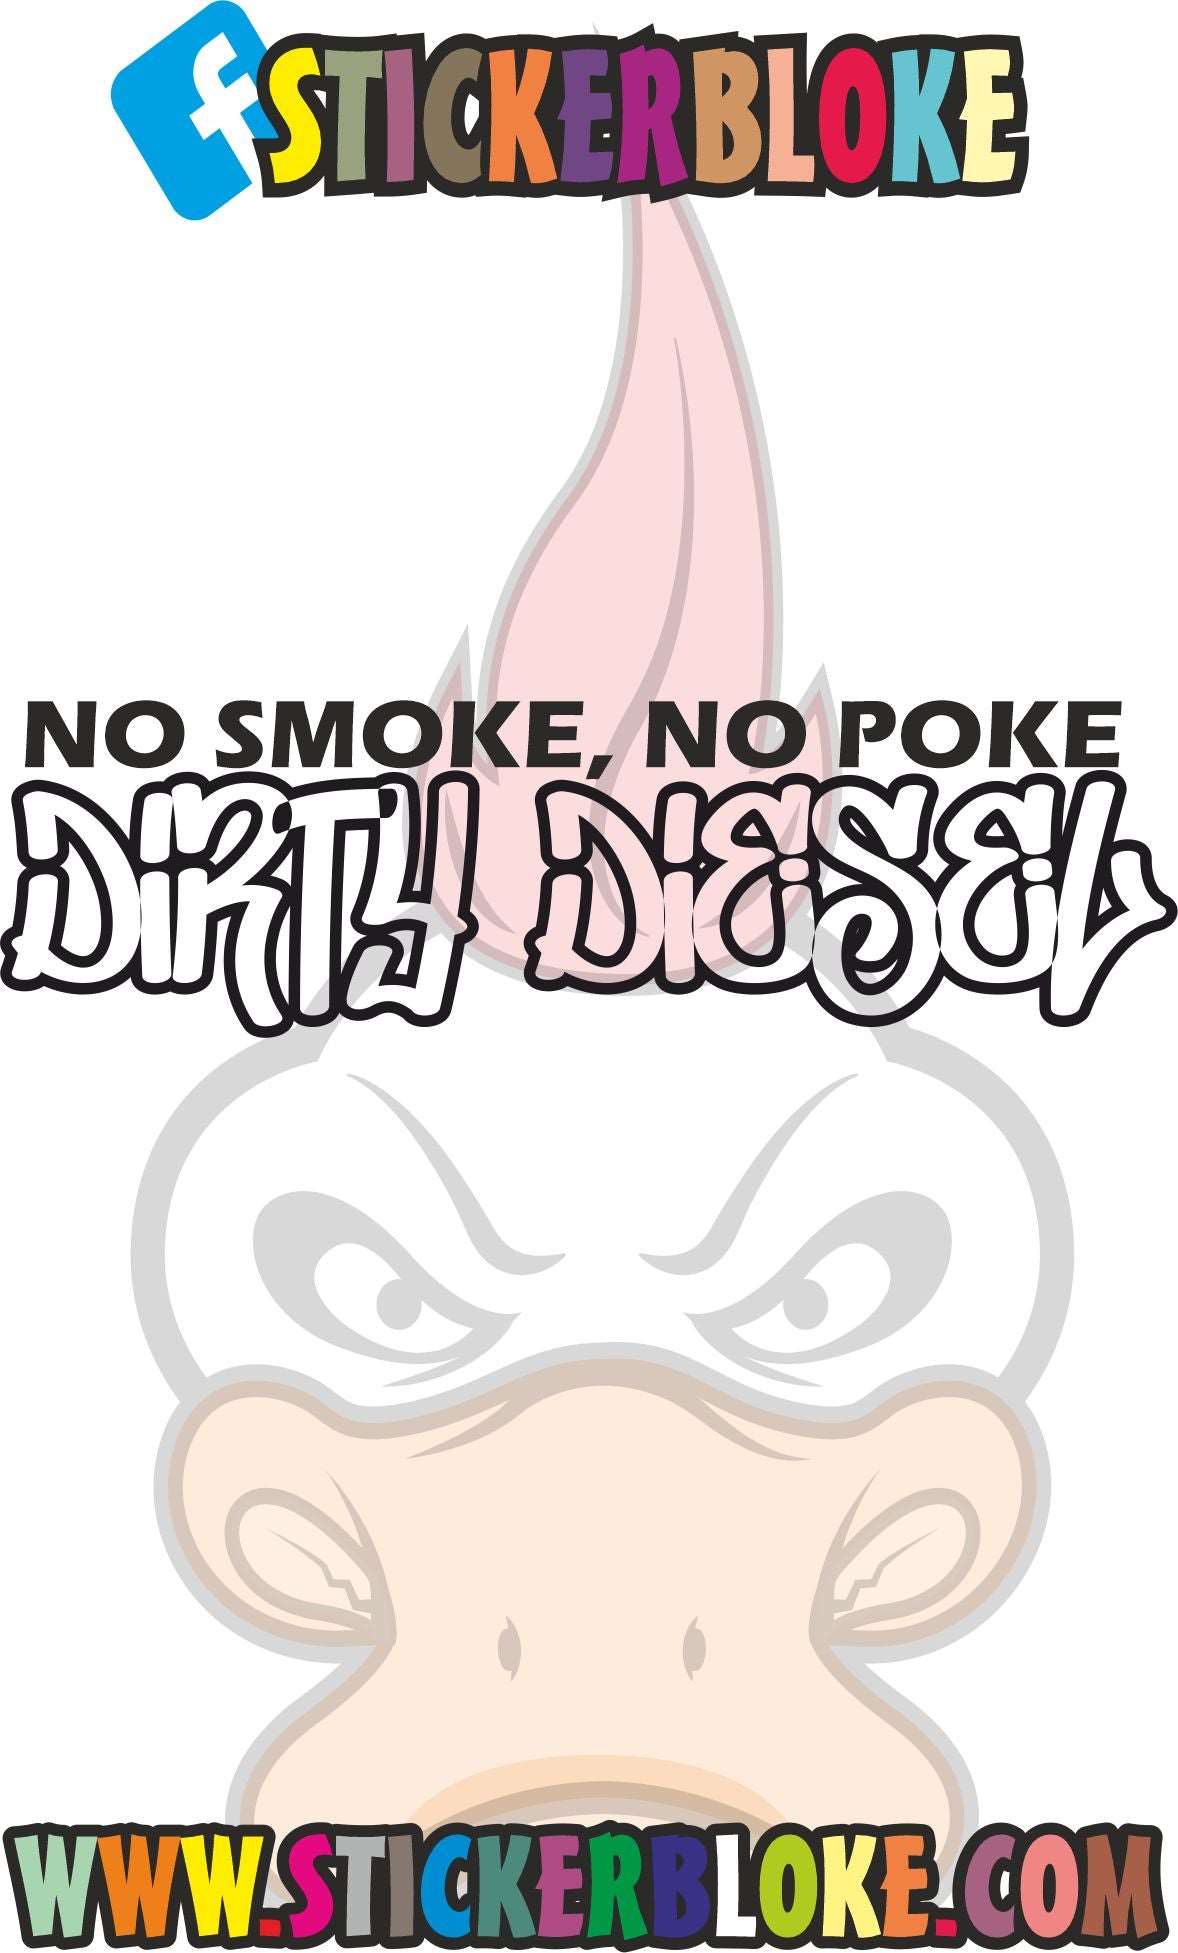 NO SMOKE NO POKE DIRTY DIESEL